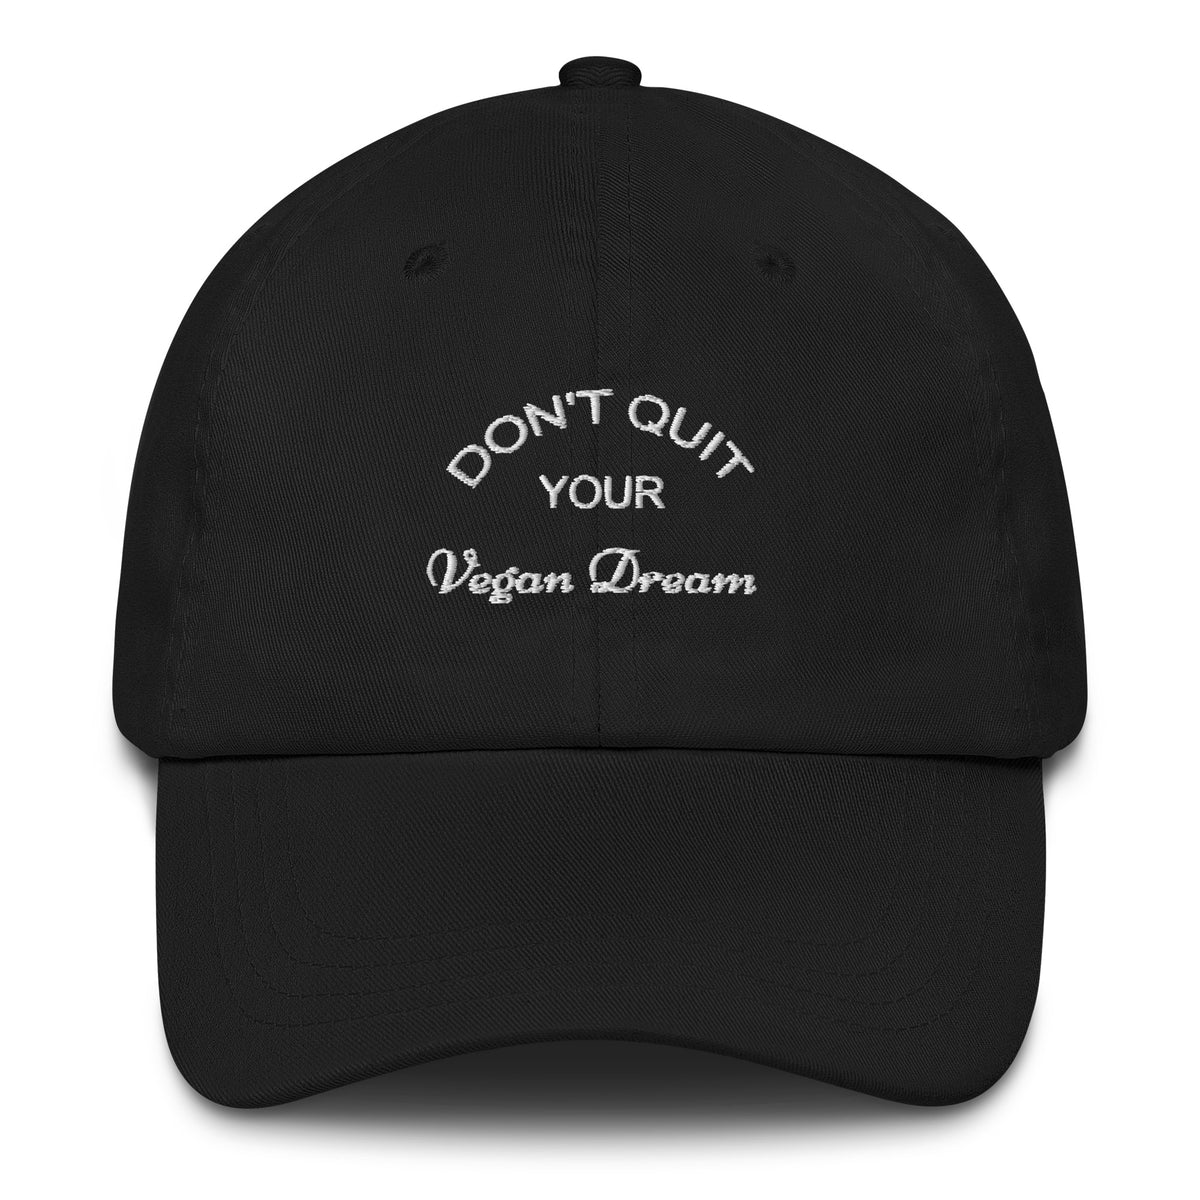 DON'T QUIT YOUR VEGAN DREAM Dad hat